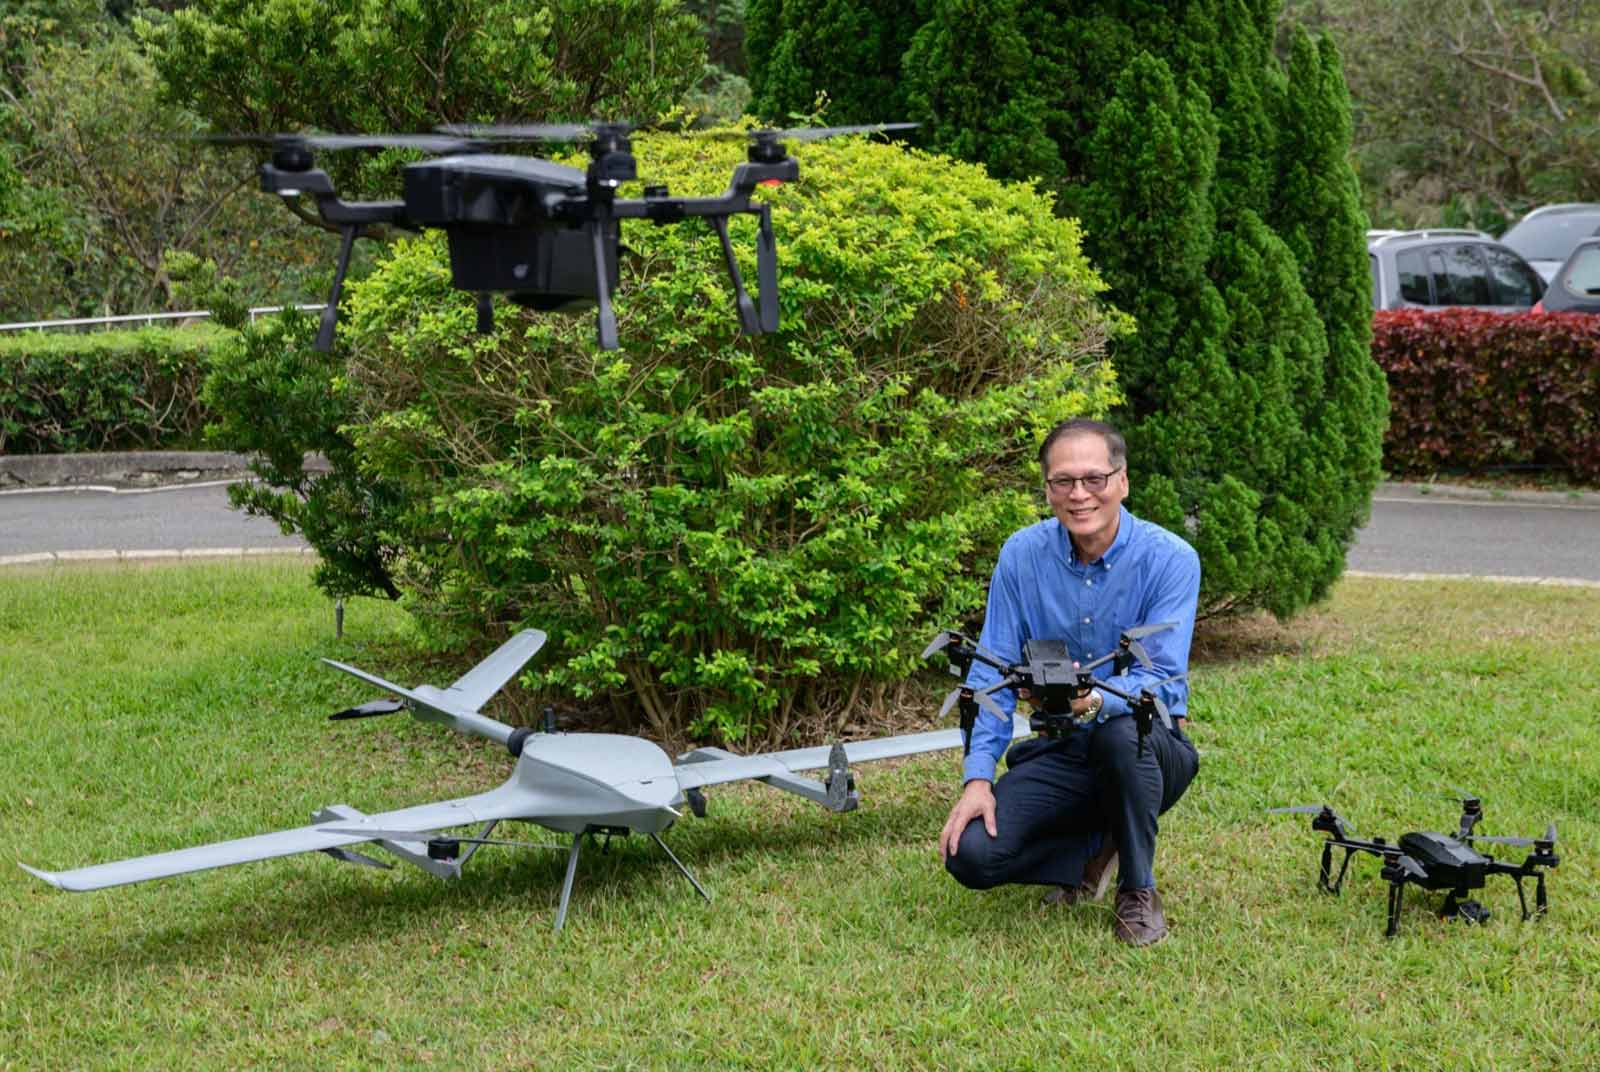 Coretronic drones soar over DJI in the US market